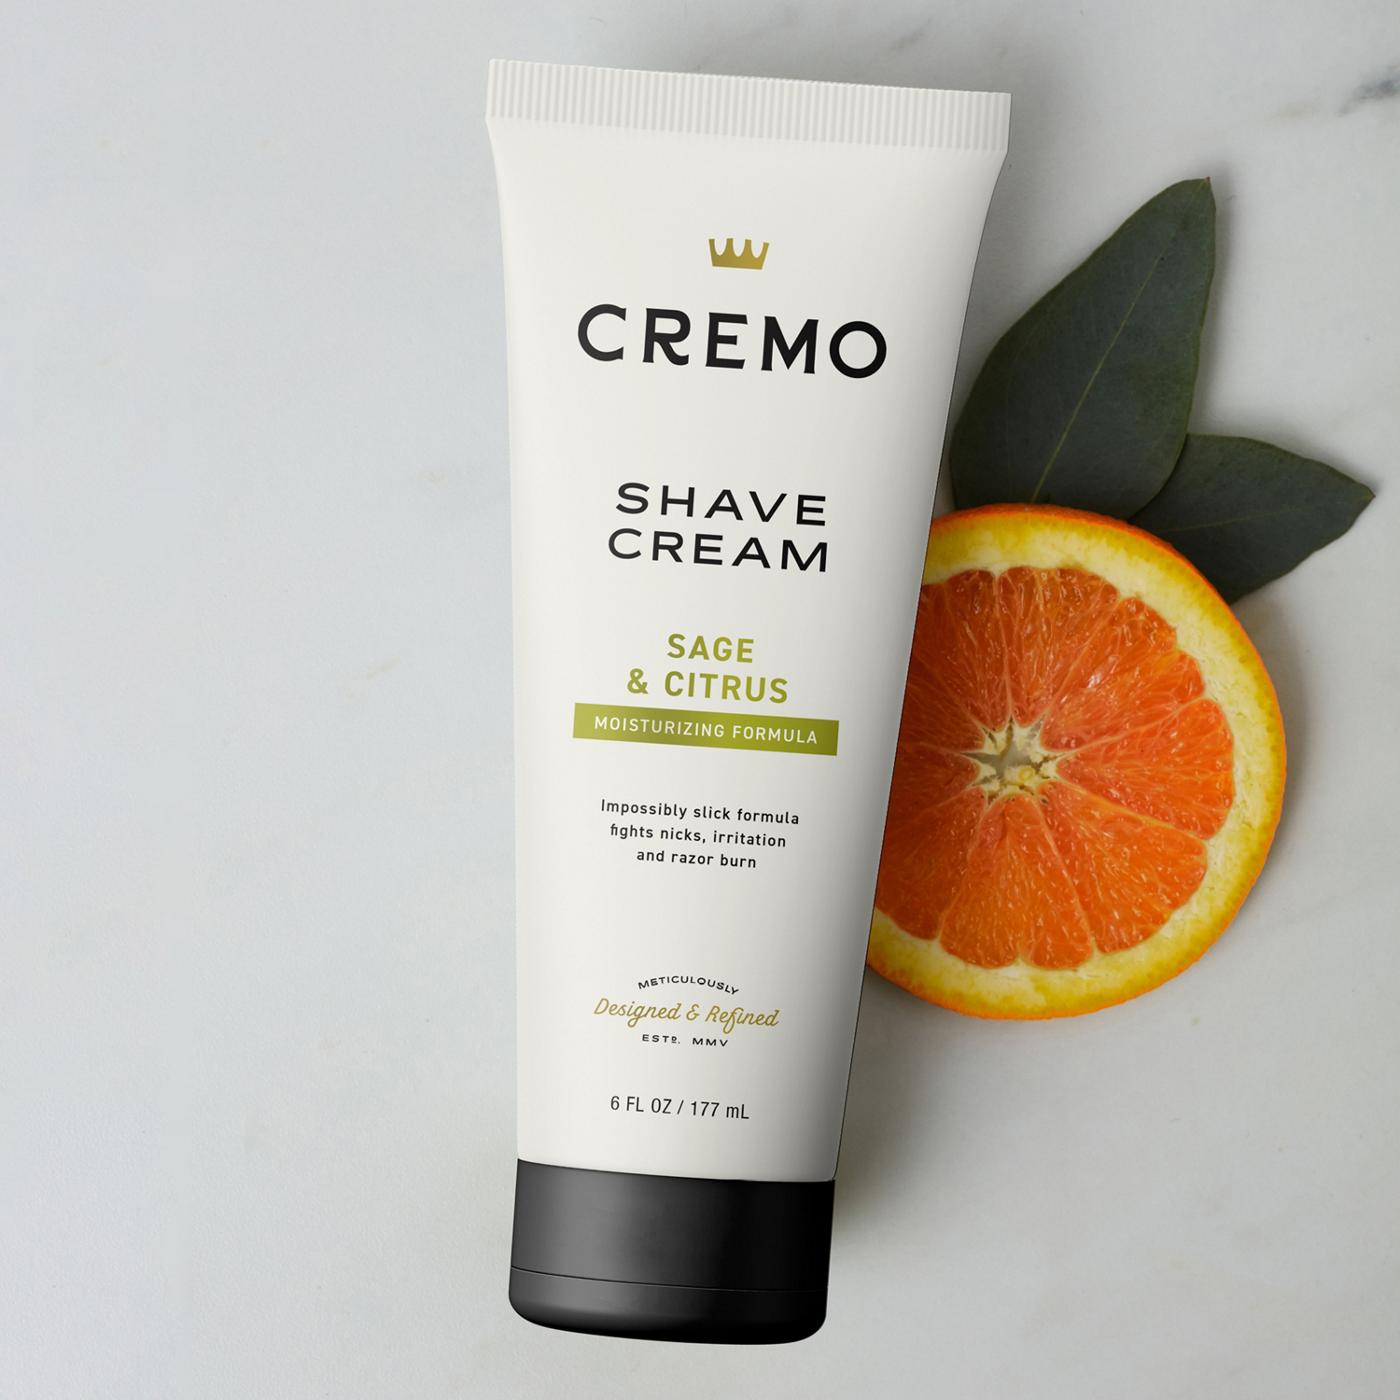 Cremo Shave Cream - Sage & Cistrus; image 5 of 6